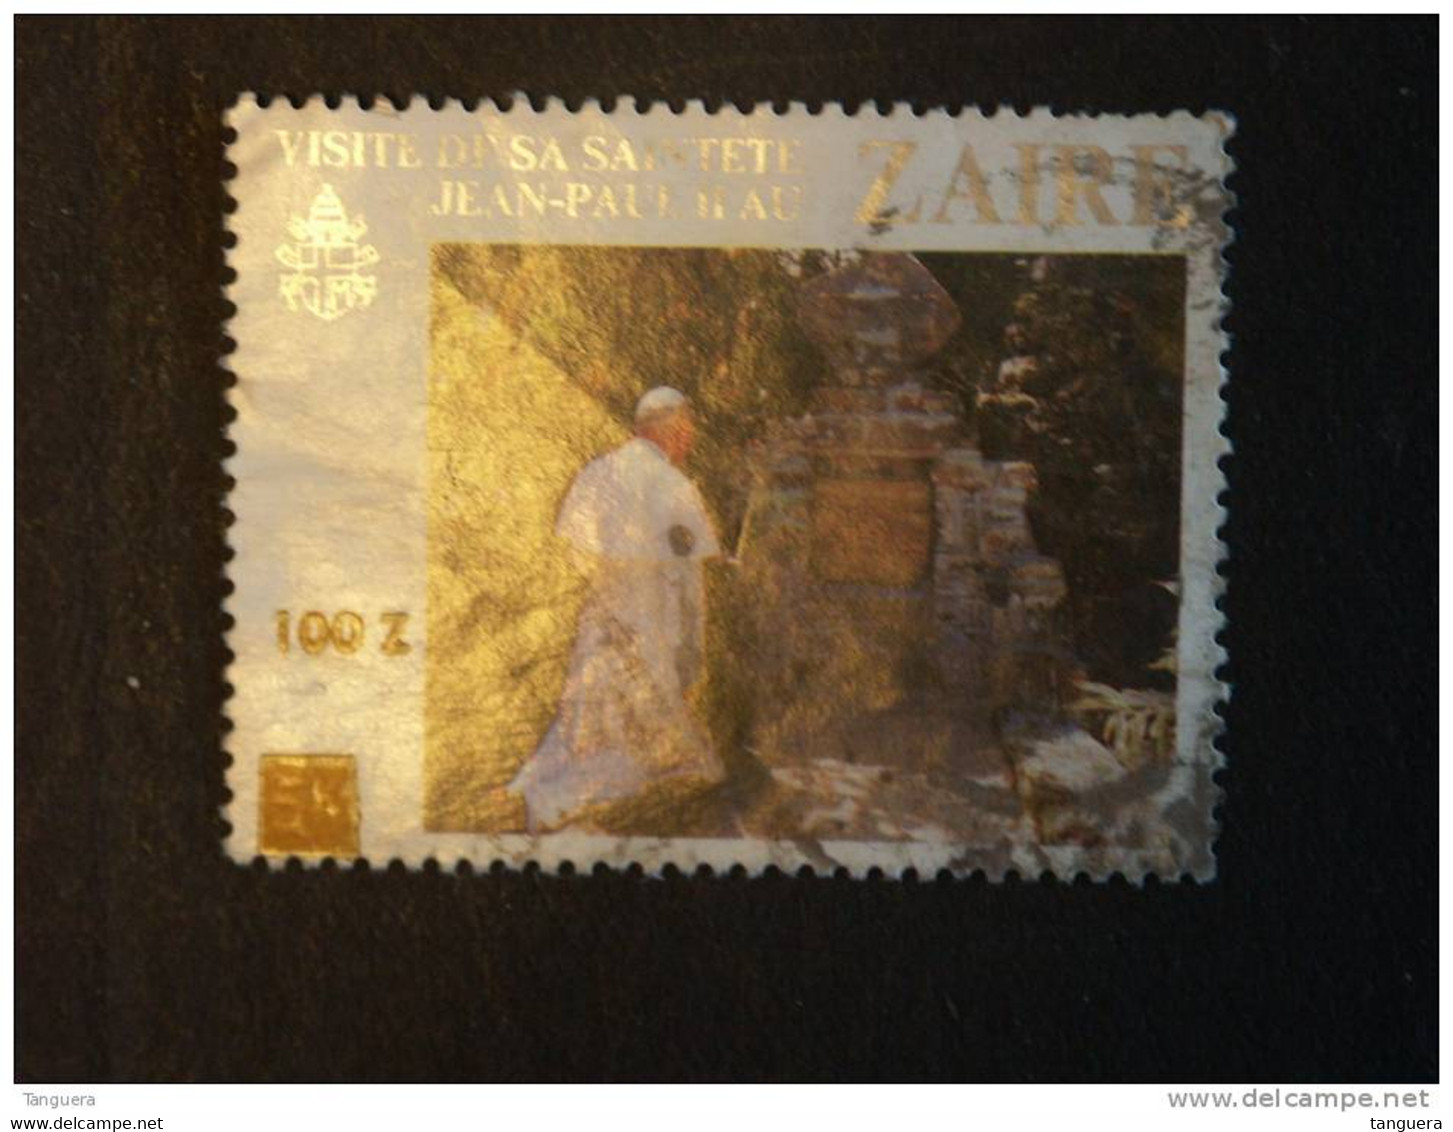 Congo Zaire 1990 Timbres Surchargés Pape Jean-Paul II Yv 1282 COB 1362 O - Gebraucht